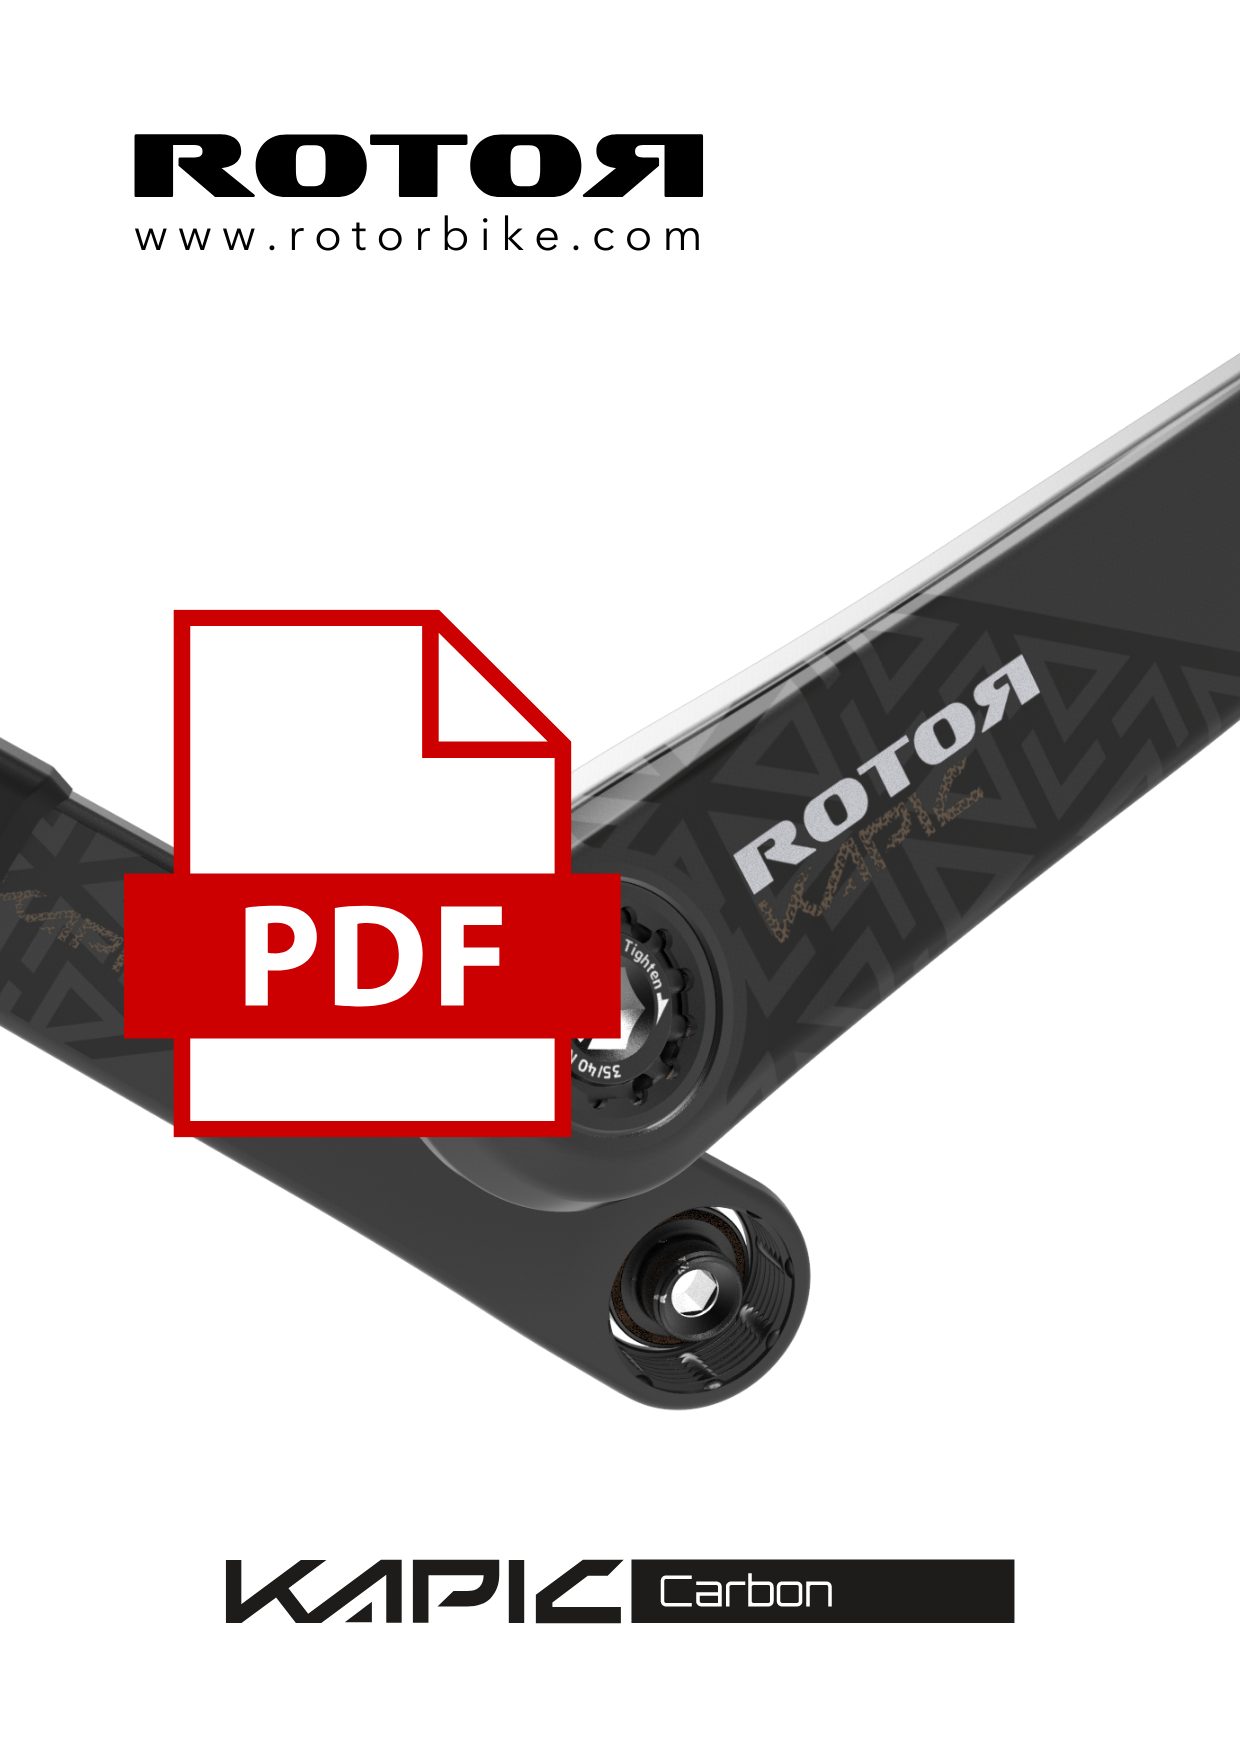 Rotor Katalog Kapic Carbon 2021/2022 - PDF